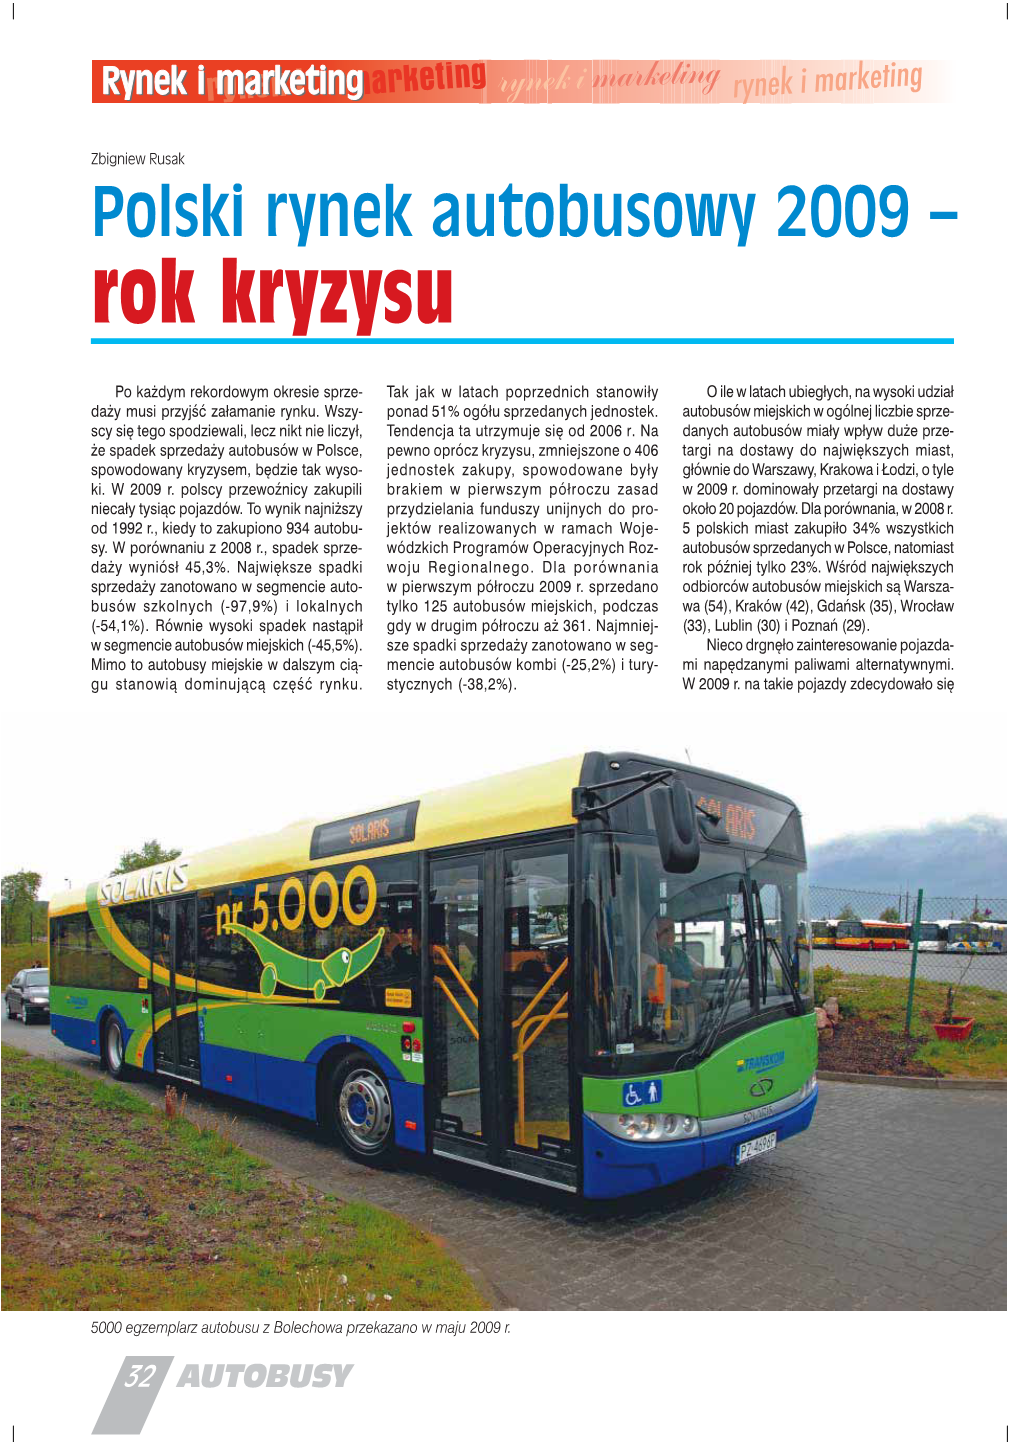 Polski Rynek Autobusowy 2009 – Rok Kryzysu